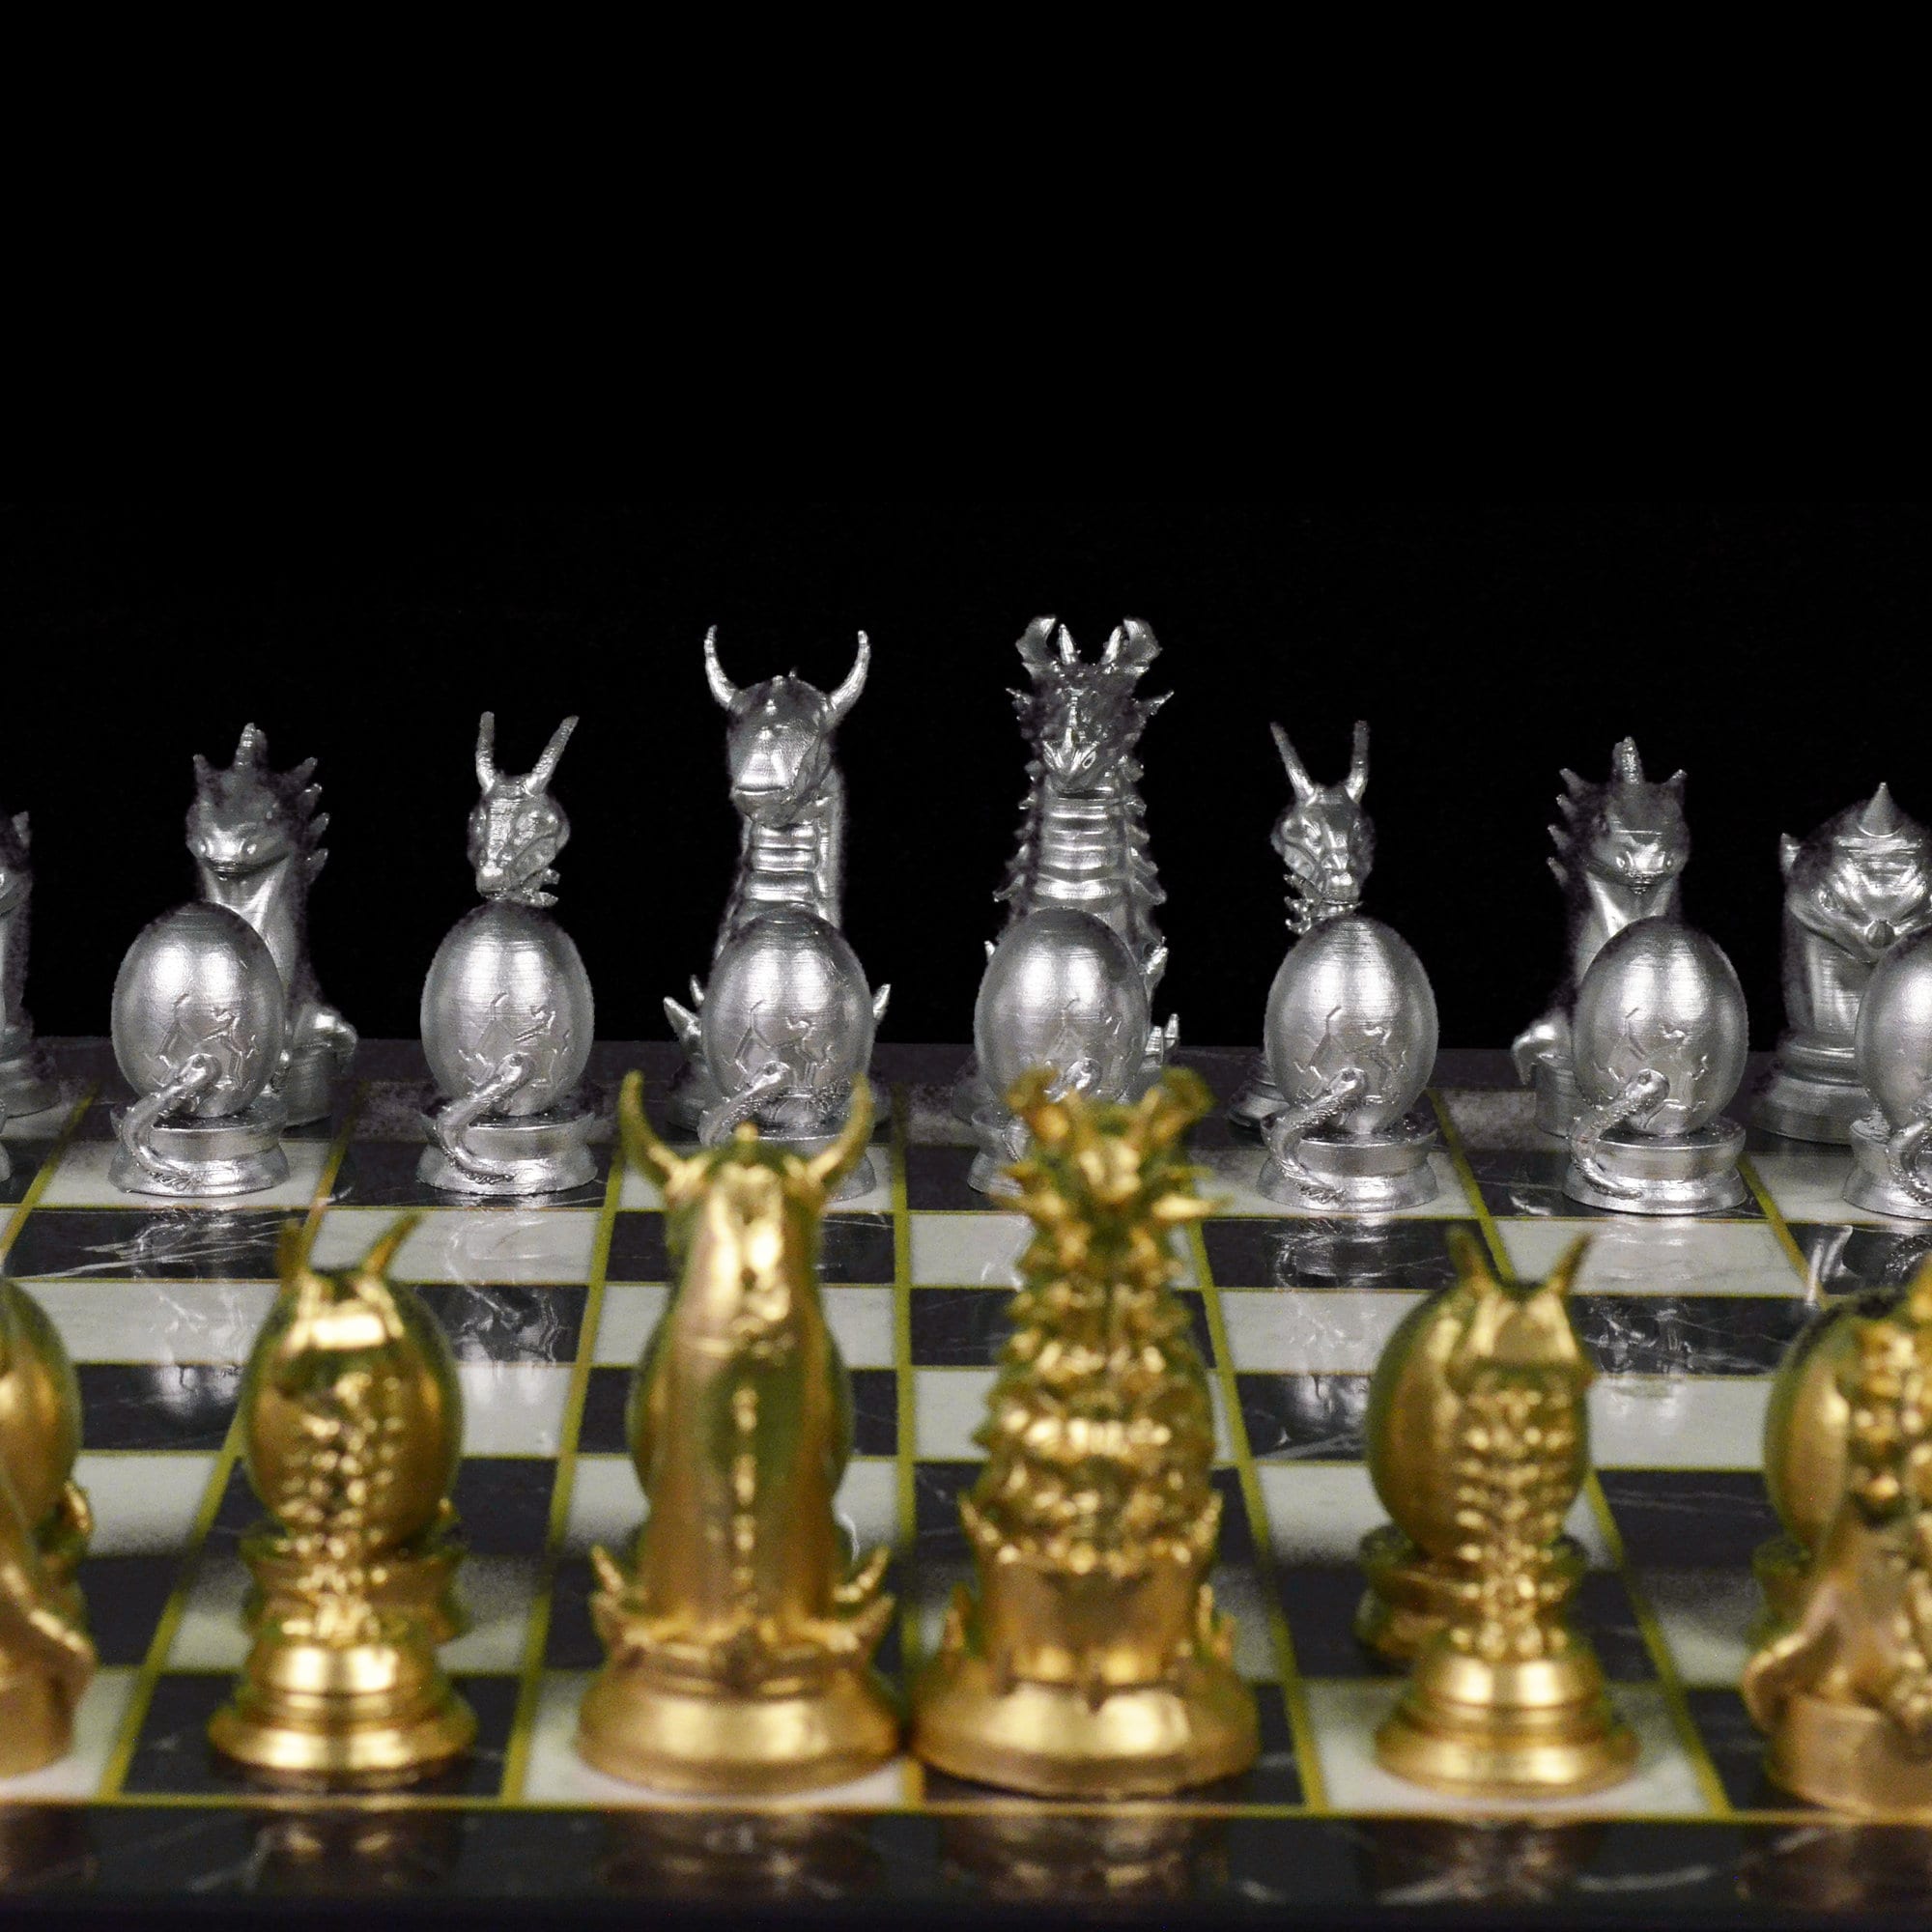 ajedrezconcardon - CLASE 06 PUBLICADO DRAGON ACELERADO 🐉   #ajedrezconcardon #ajedrez  #chess #xadrez #